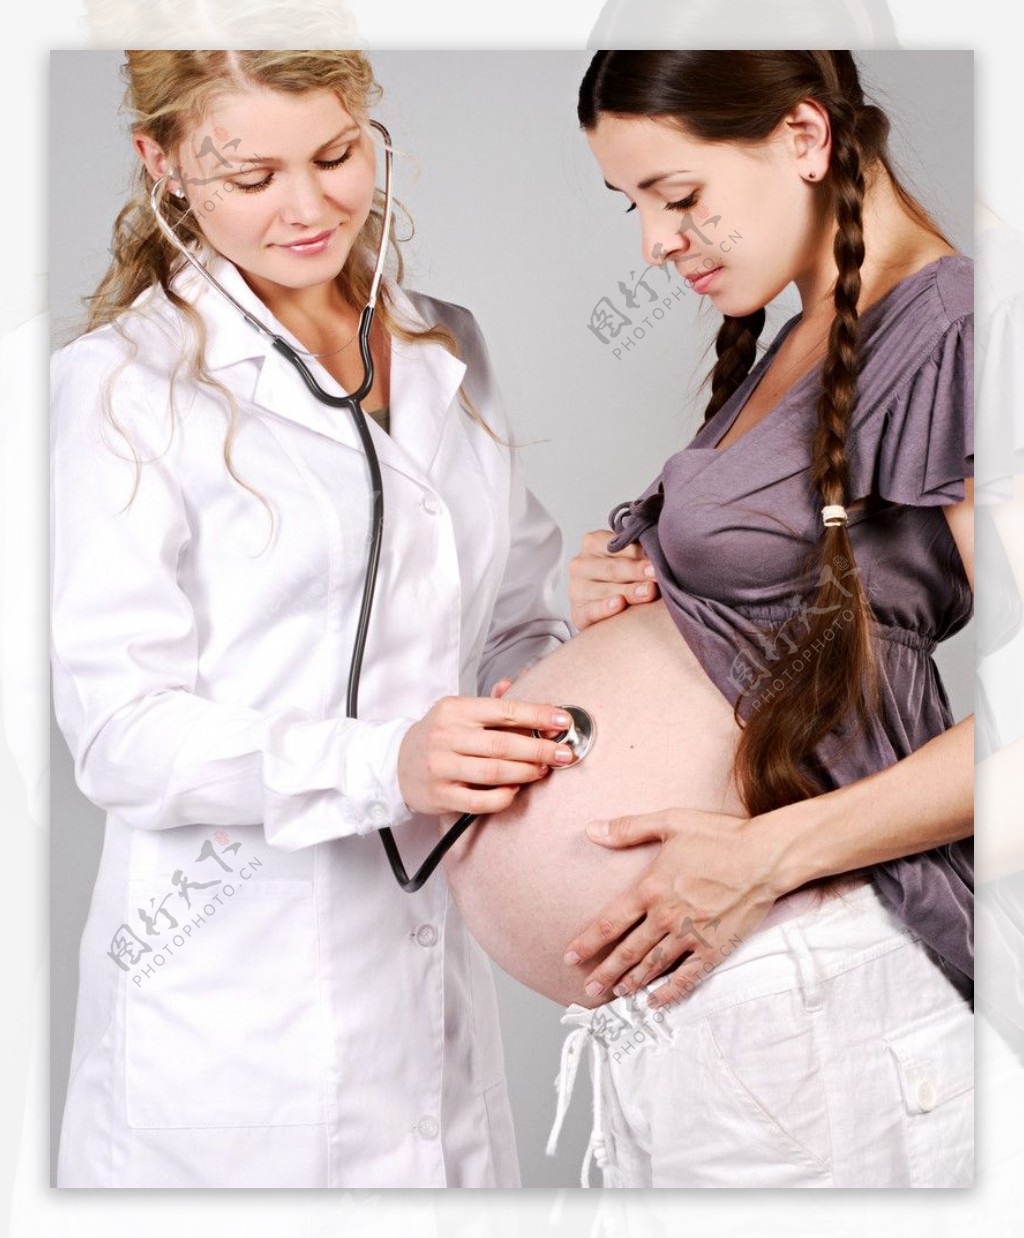 医生给孕妇做检查图片